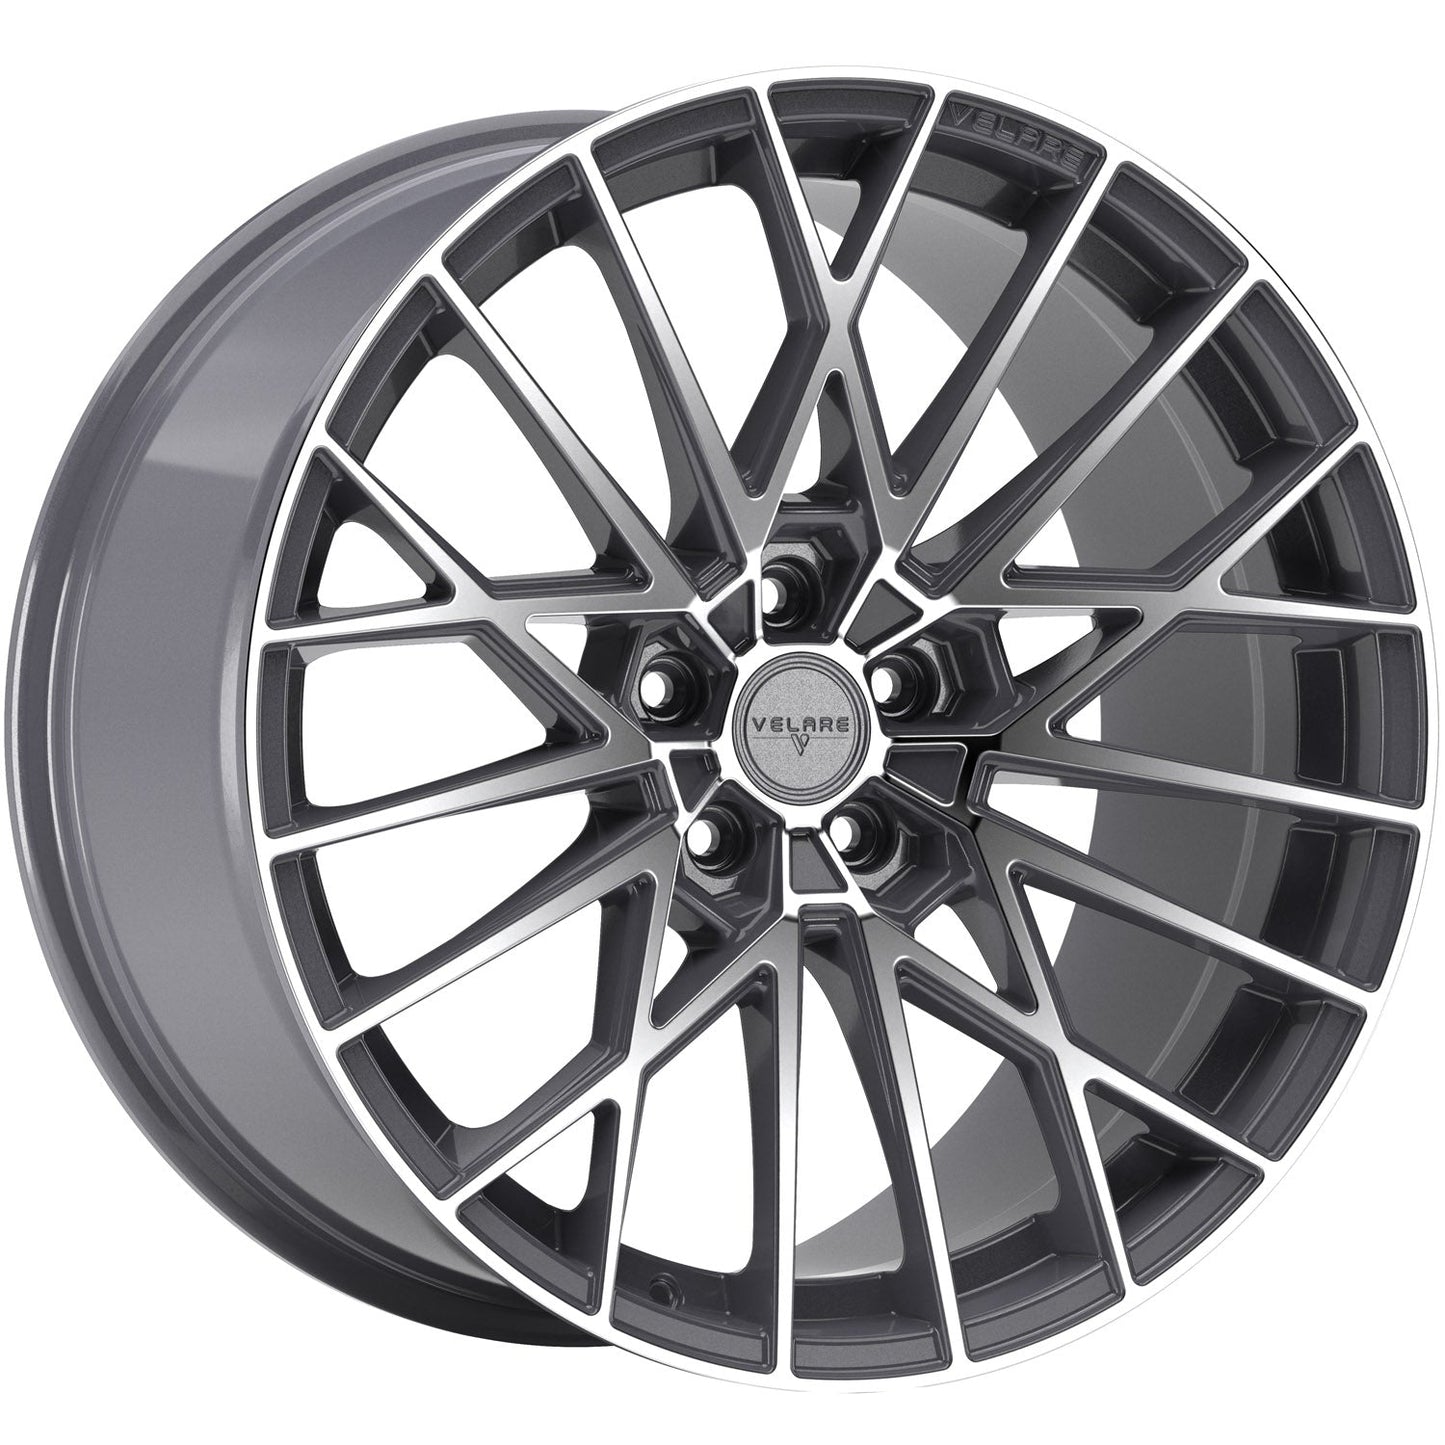 Velare-VLR07-Platinum-Grey-Machined-Face-Grey-20x8.5-72.6-wheels-rims-felger-Felghuset